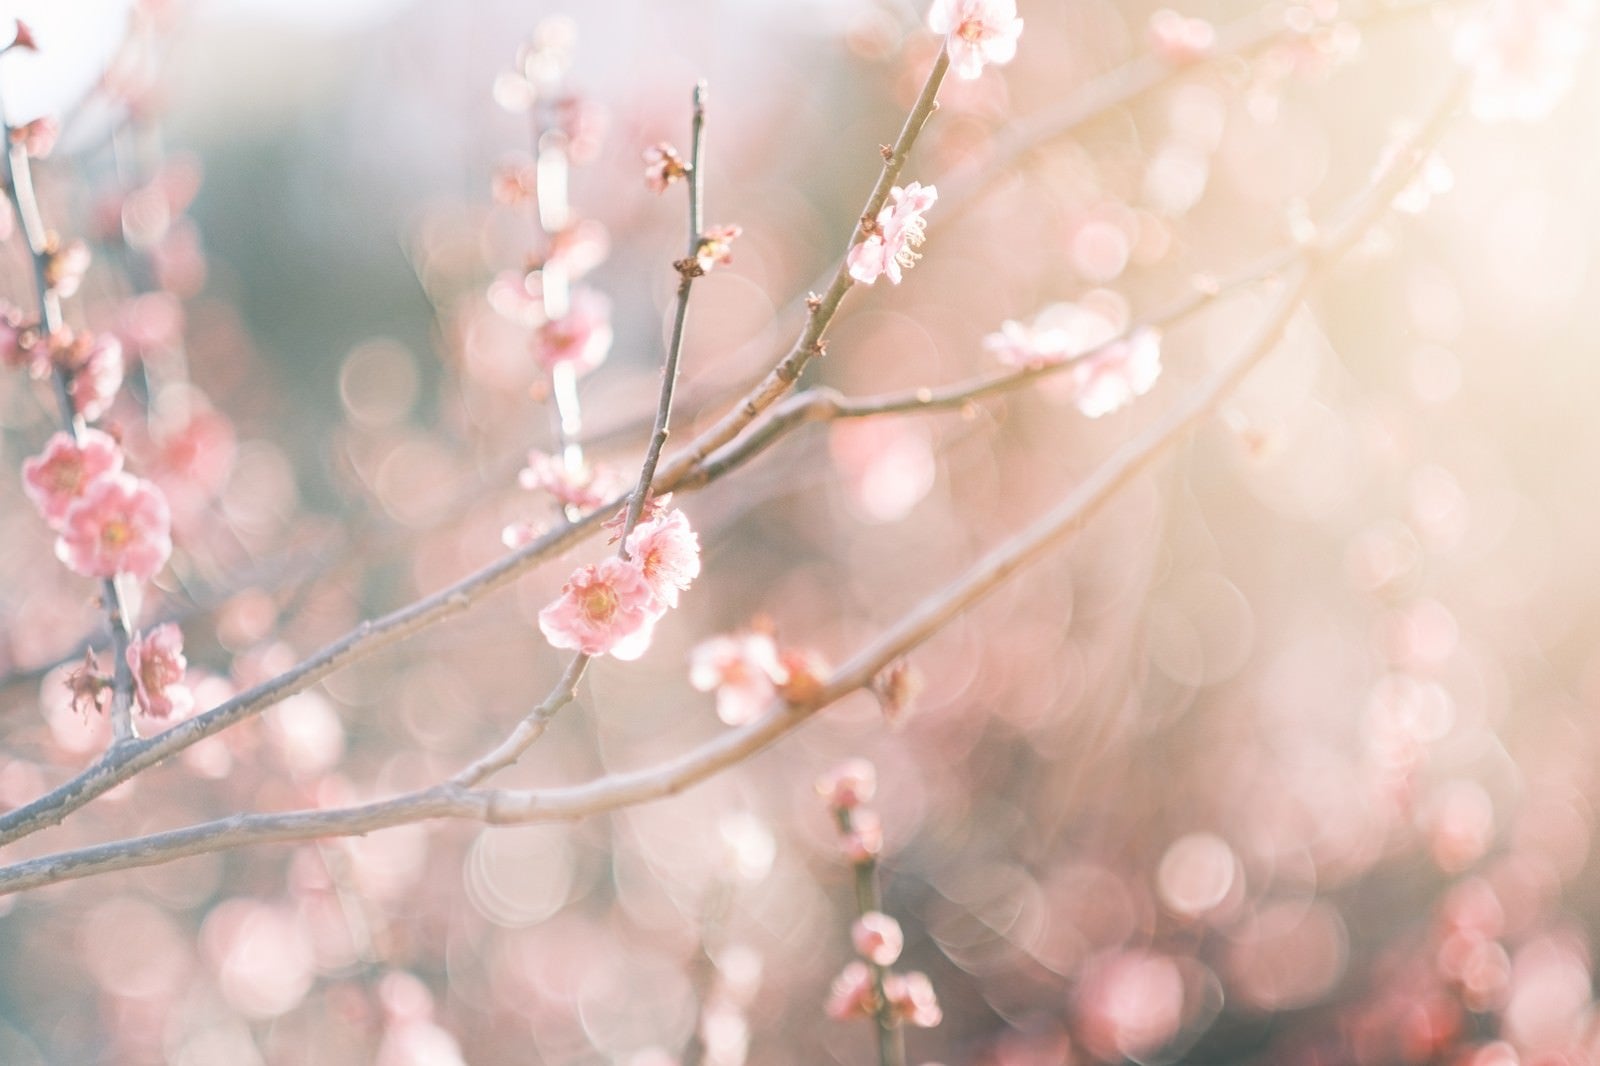 「開花する梅の花」の写真